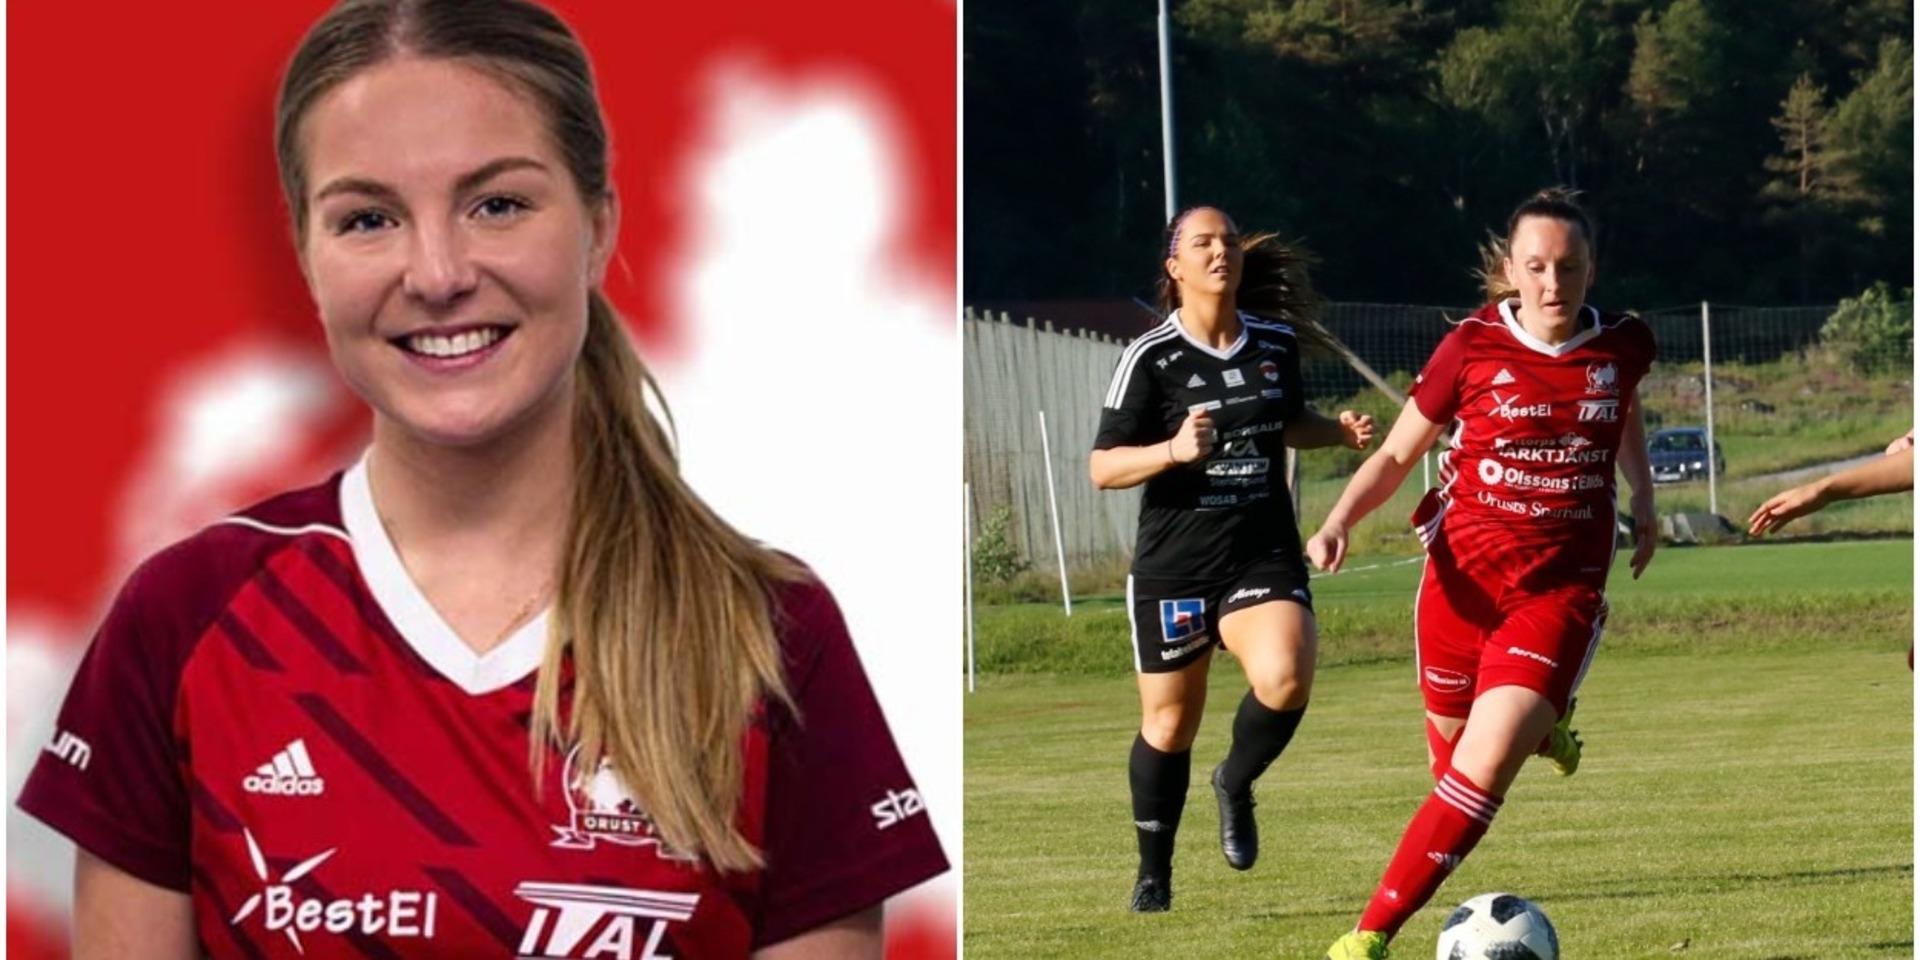 24-åriga Emelie Lööf bor i Uddevalla, studerar matematik vid Göteborgs universitet och kommer att spela för Orust FC i division 2 säsongen 2022. Hon har sina rötter i Nösund på Orust.